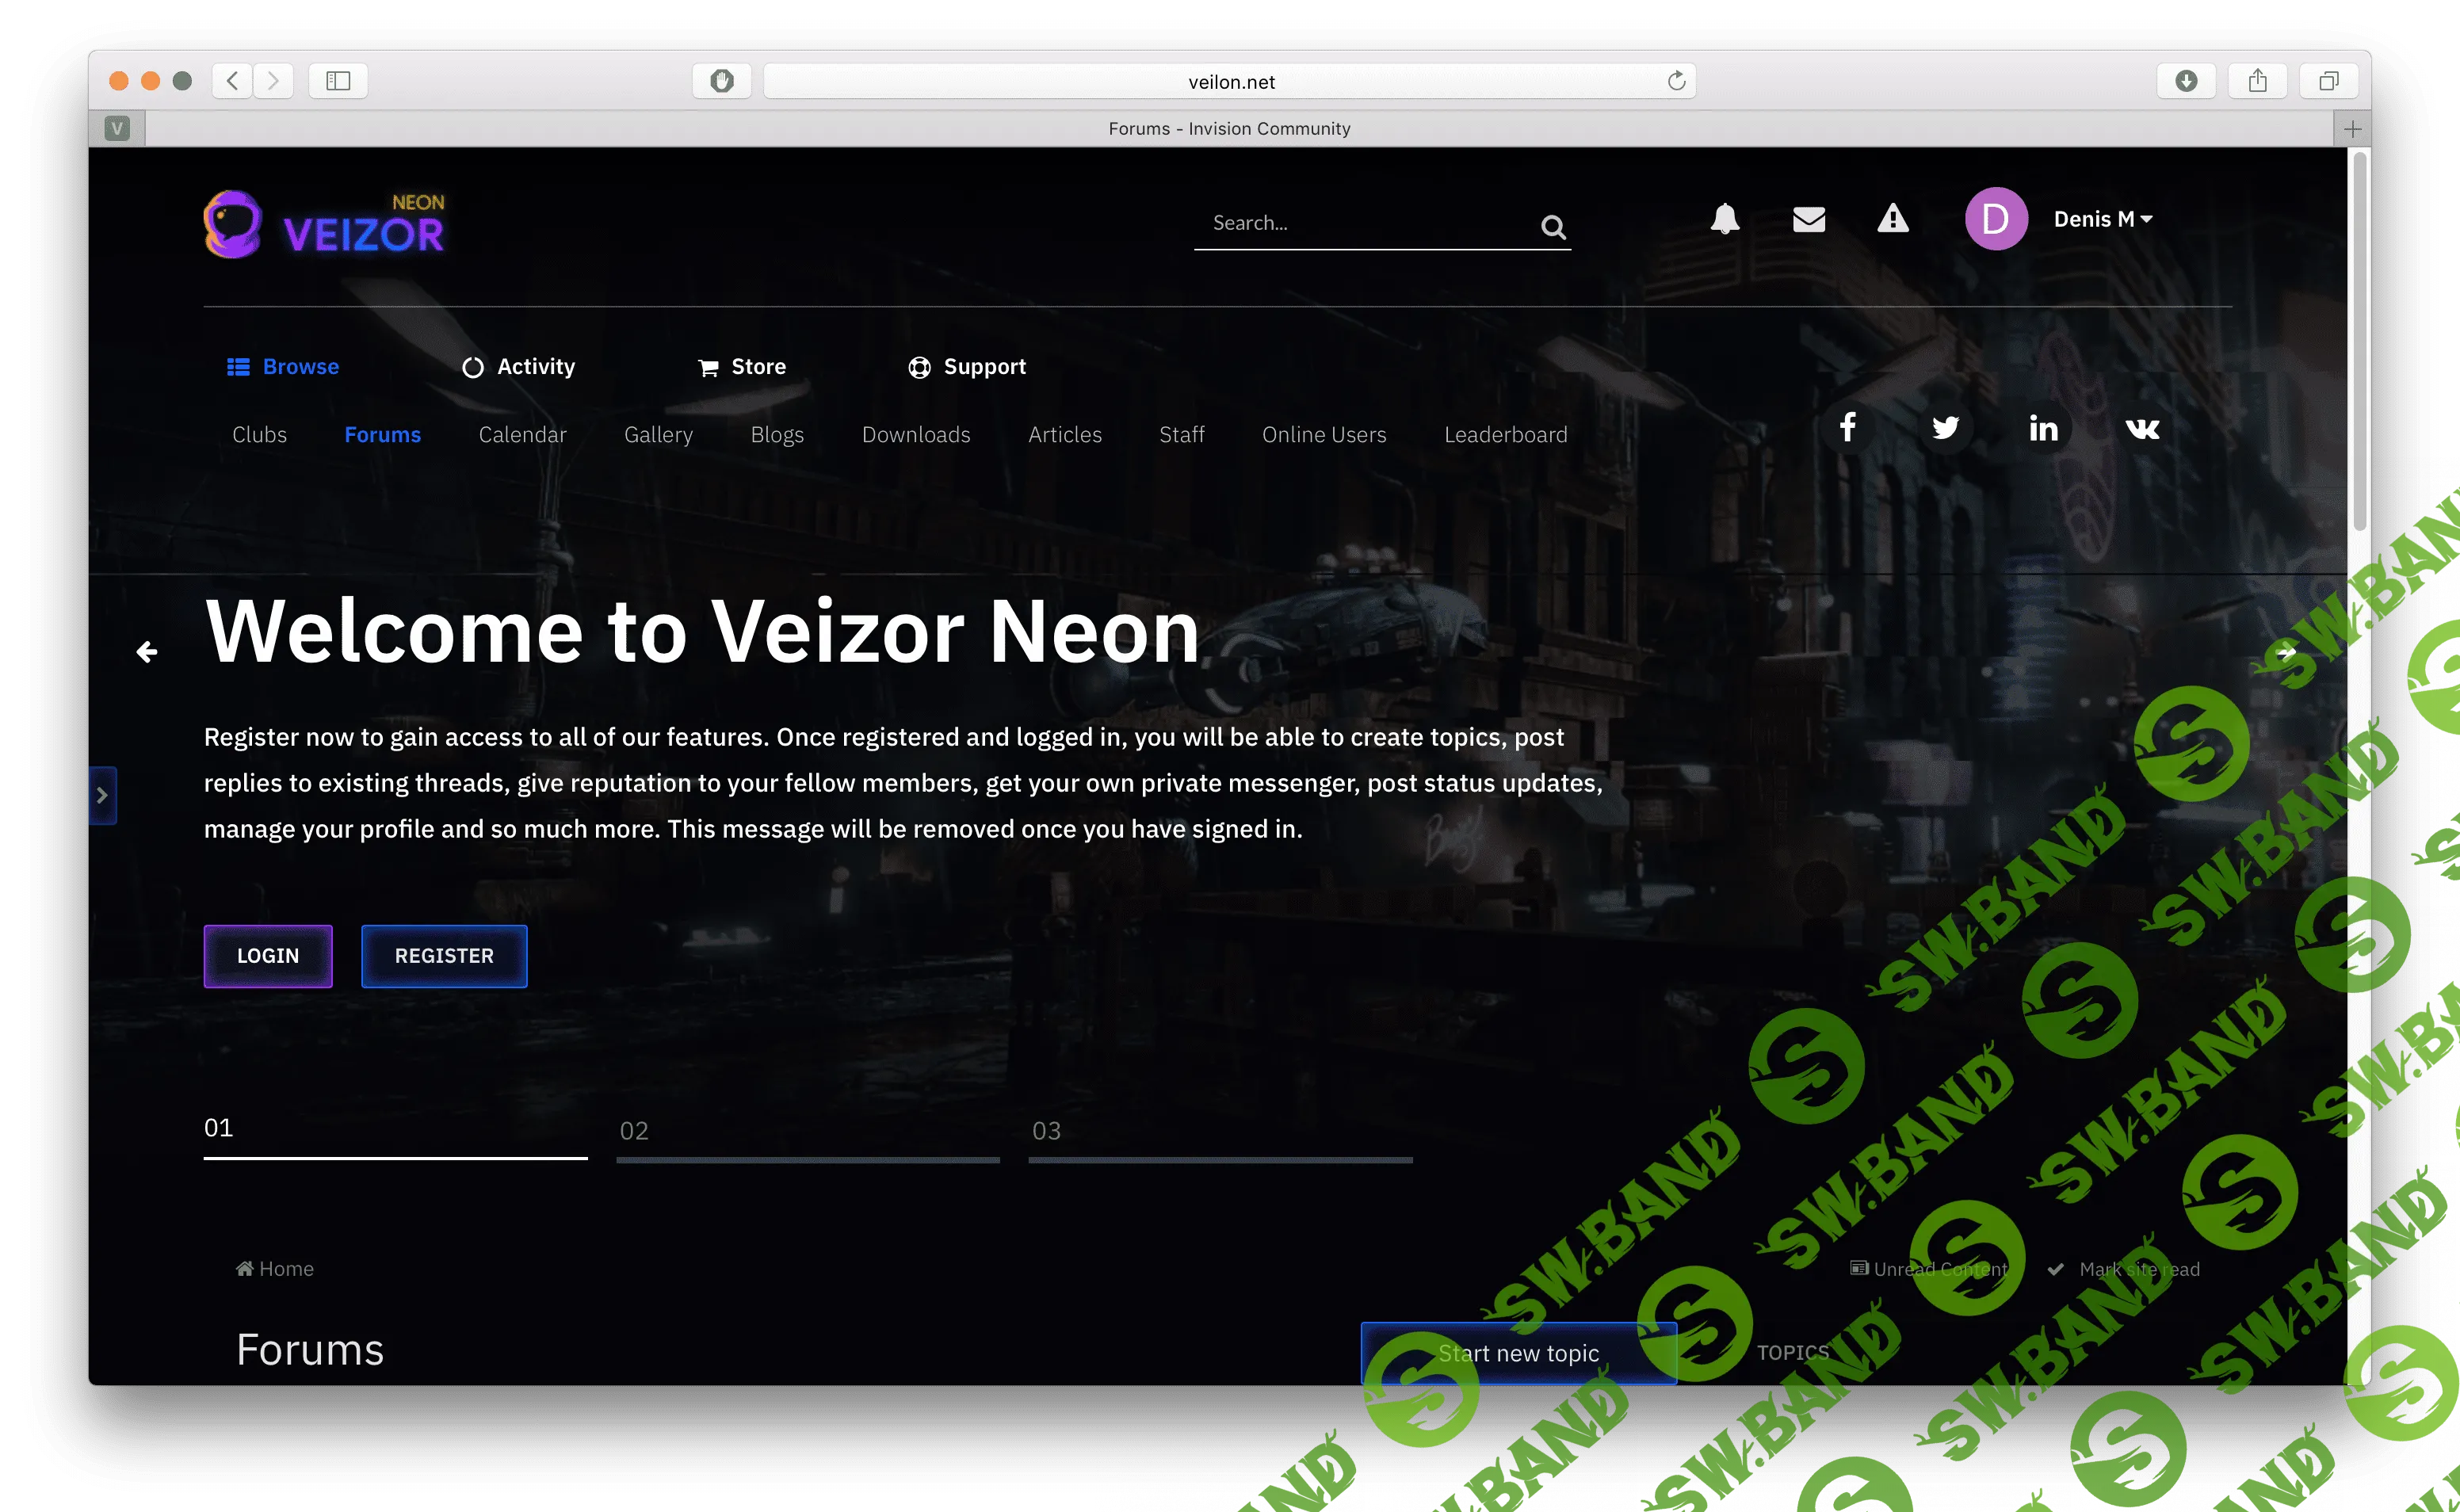 [invisioncommunity] Veizor Neon - шаблон в стиле киберпанка для IPS 4.3